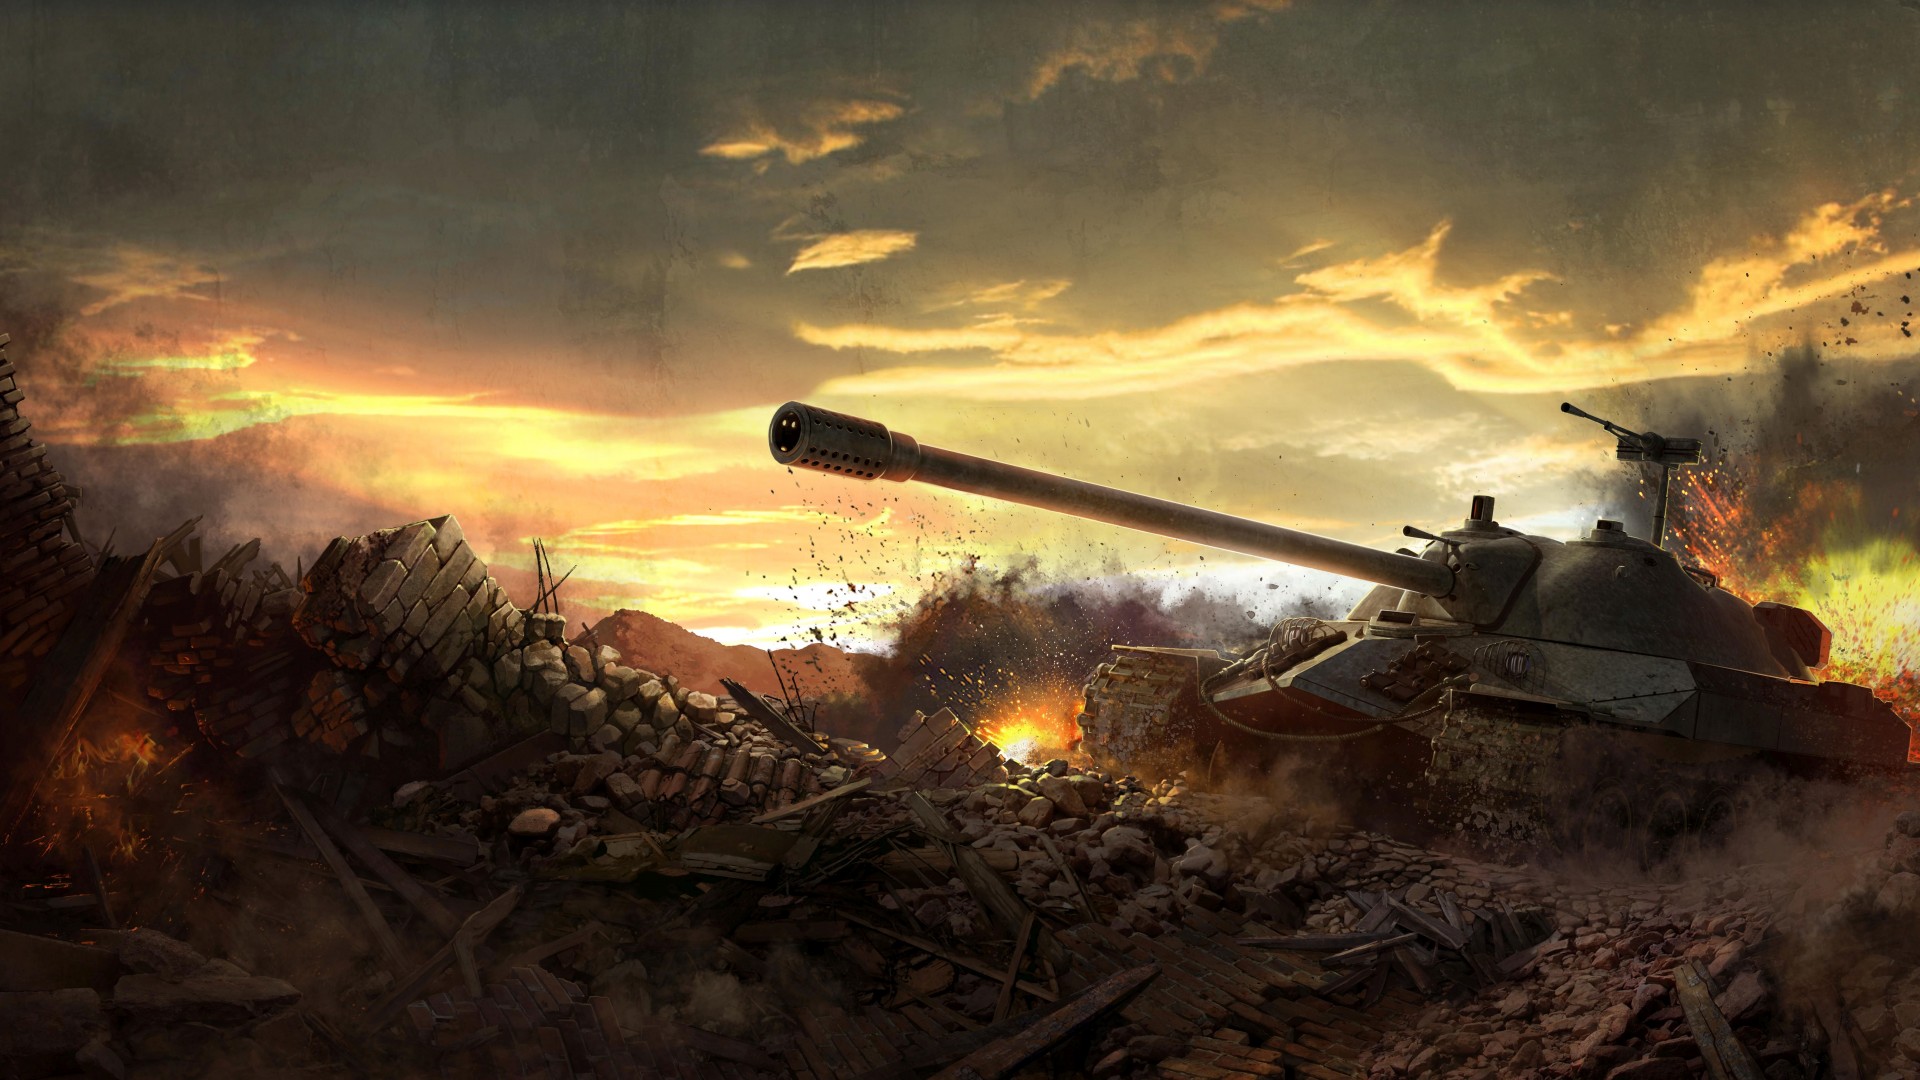 Battlefield Sky Clouds Sunset Fire Art Screenshot 4k 5k Pc